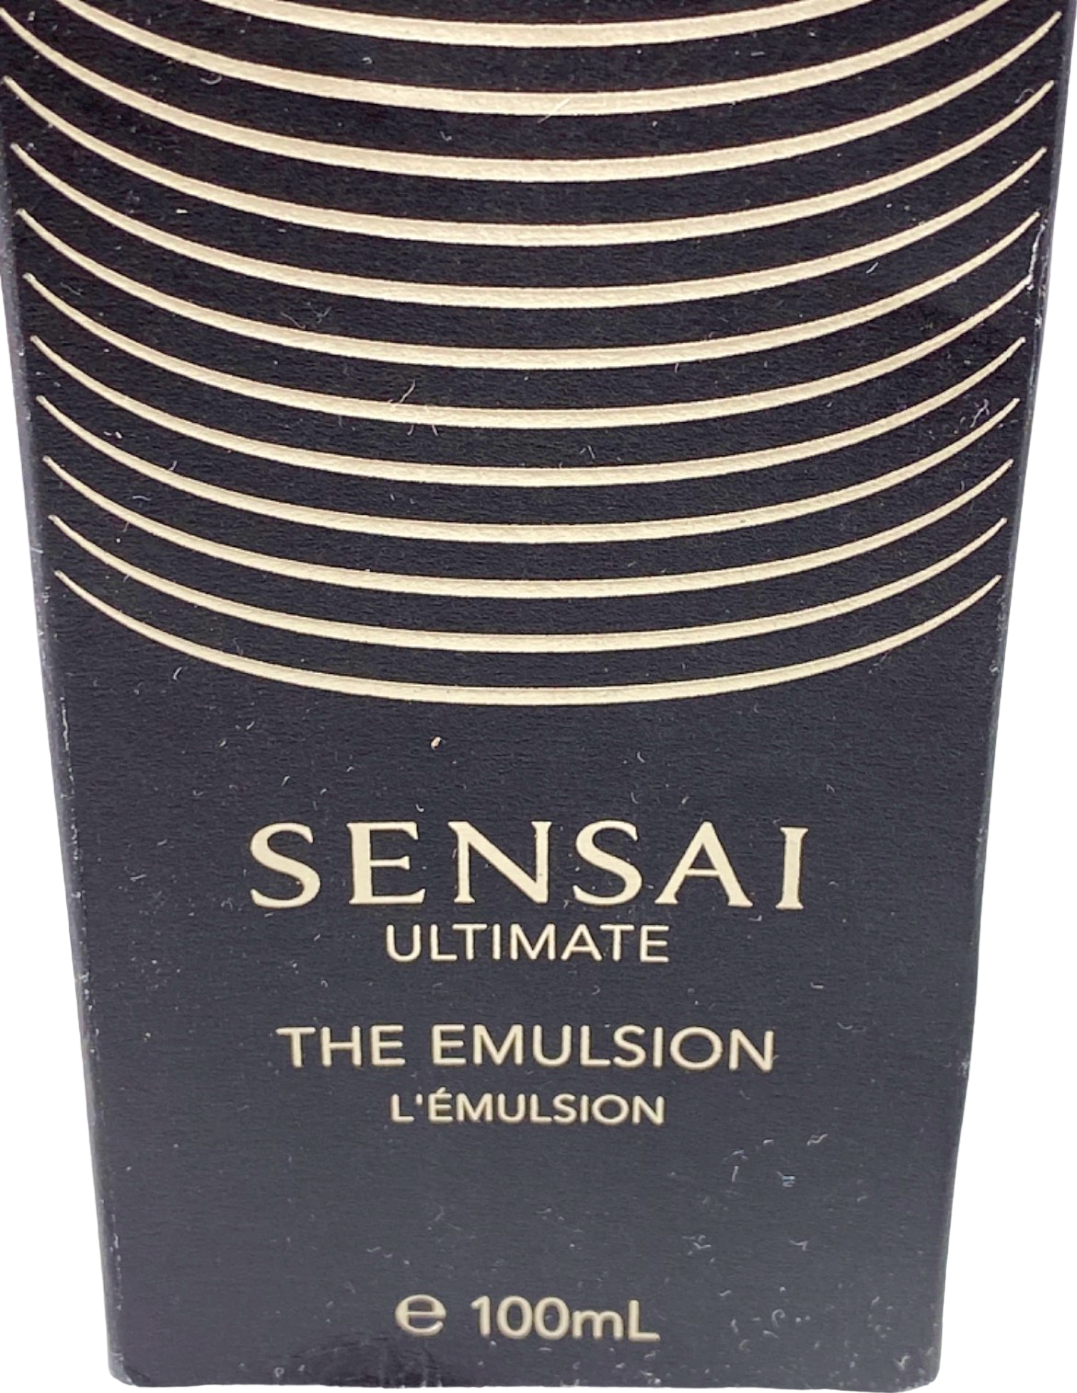 Sensai Ultimate The Emulsion 100ml